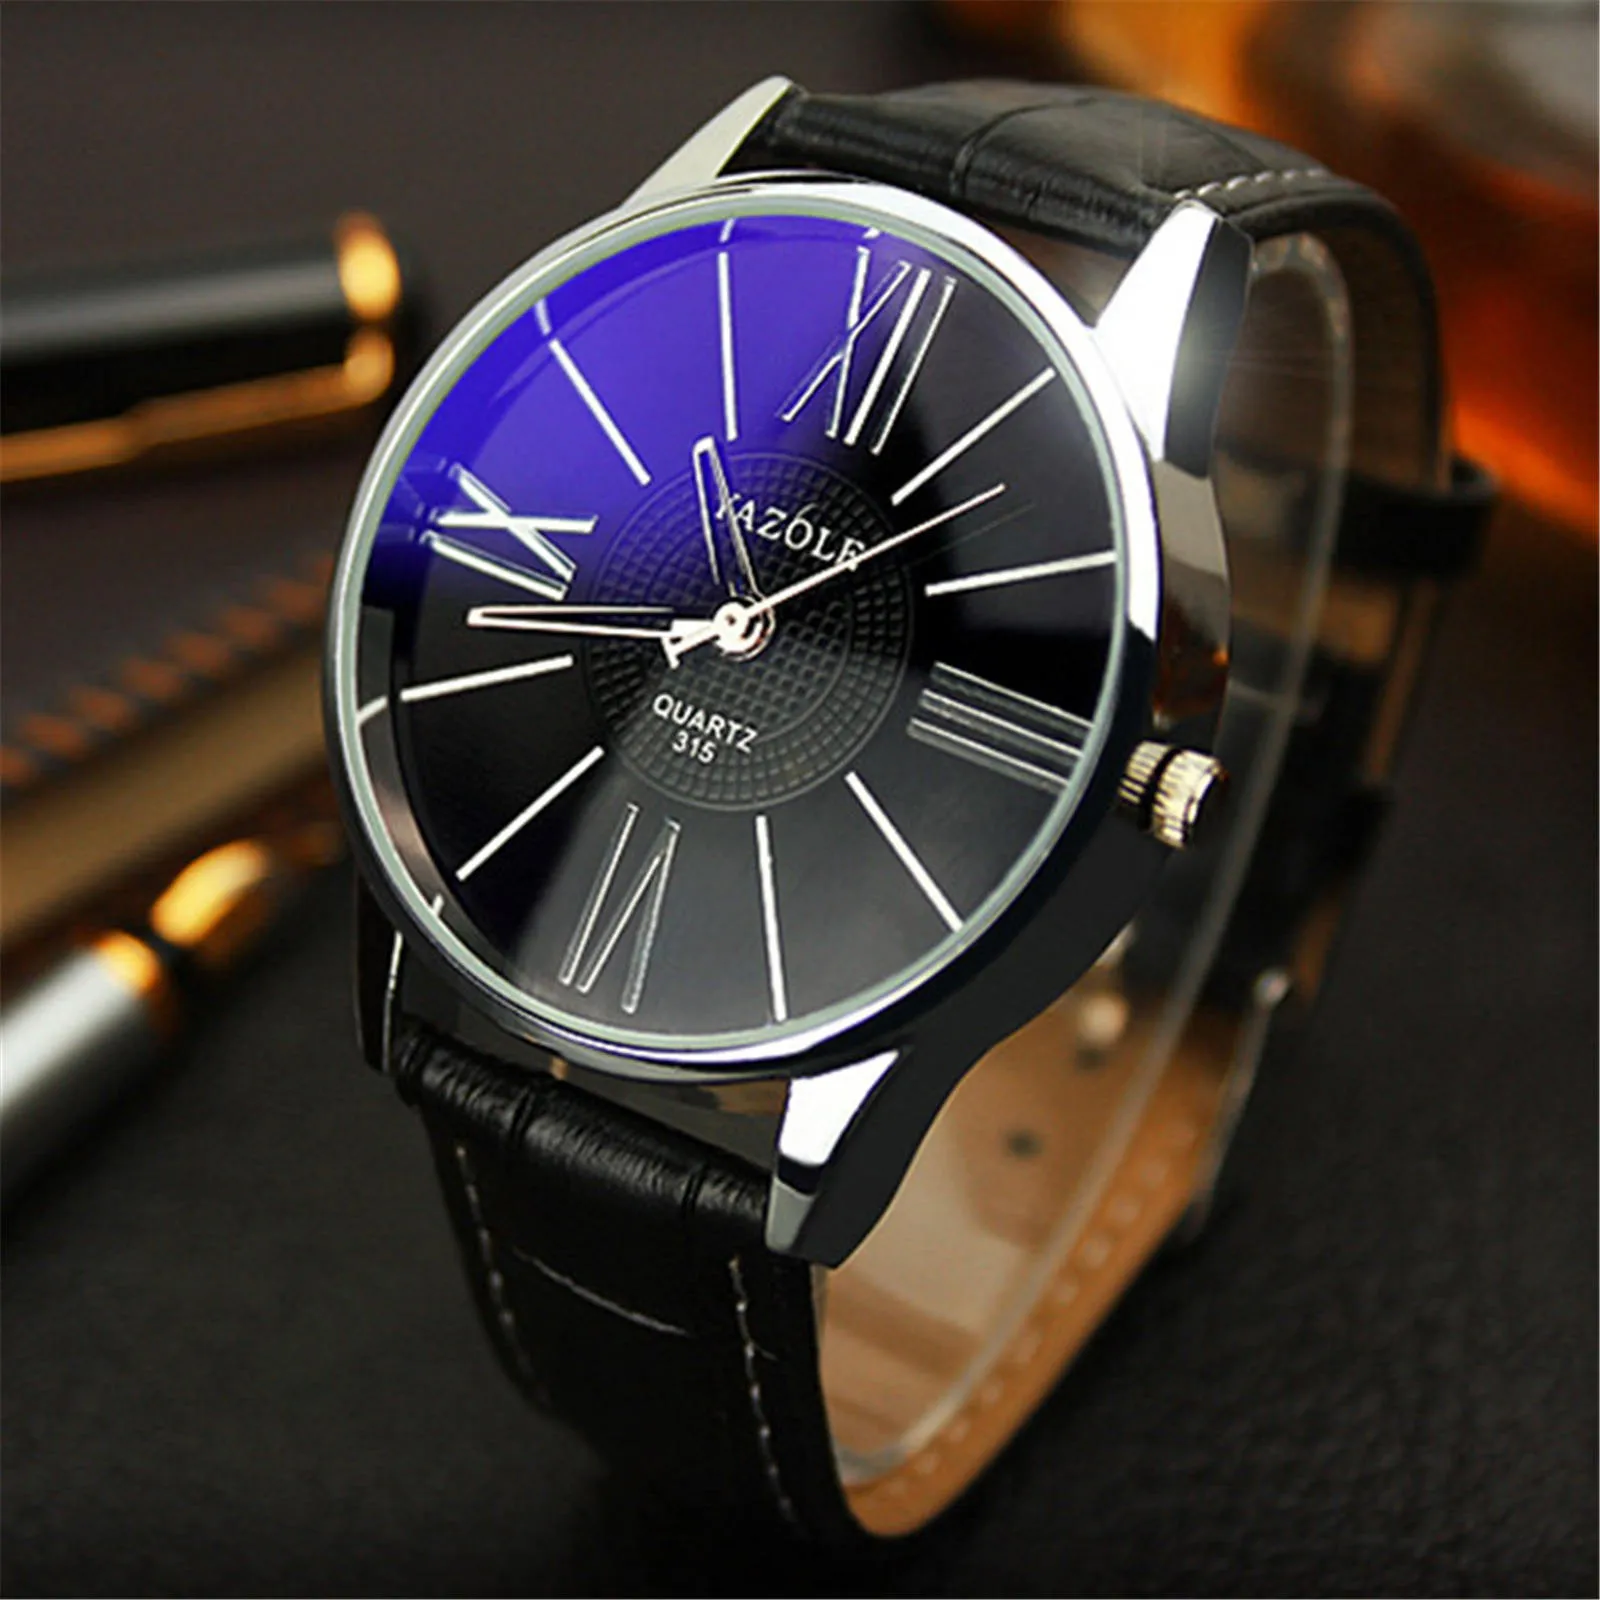 

Мужские повседневные кварцевые часы, мужские часы с кожаным ремешком, водонепроницаемые высококачественные часы из голубого стекла, мужские кварцевые часы с большим циферблатом